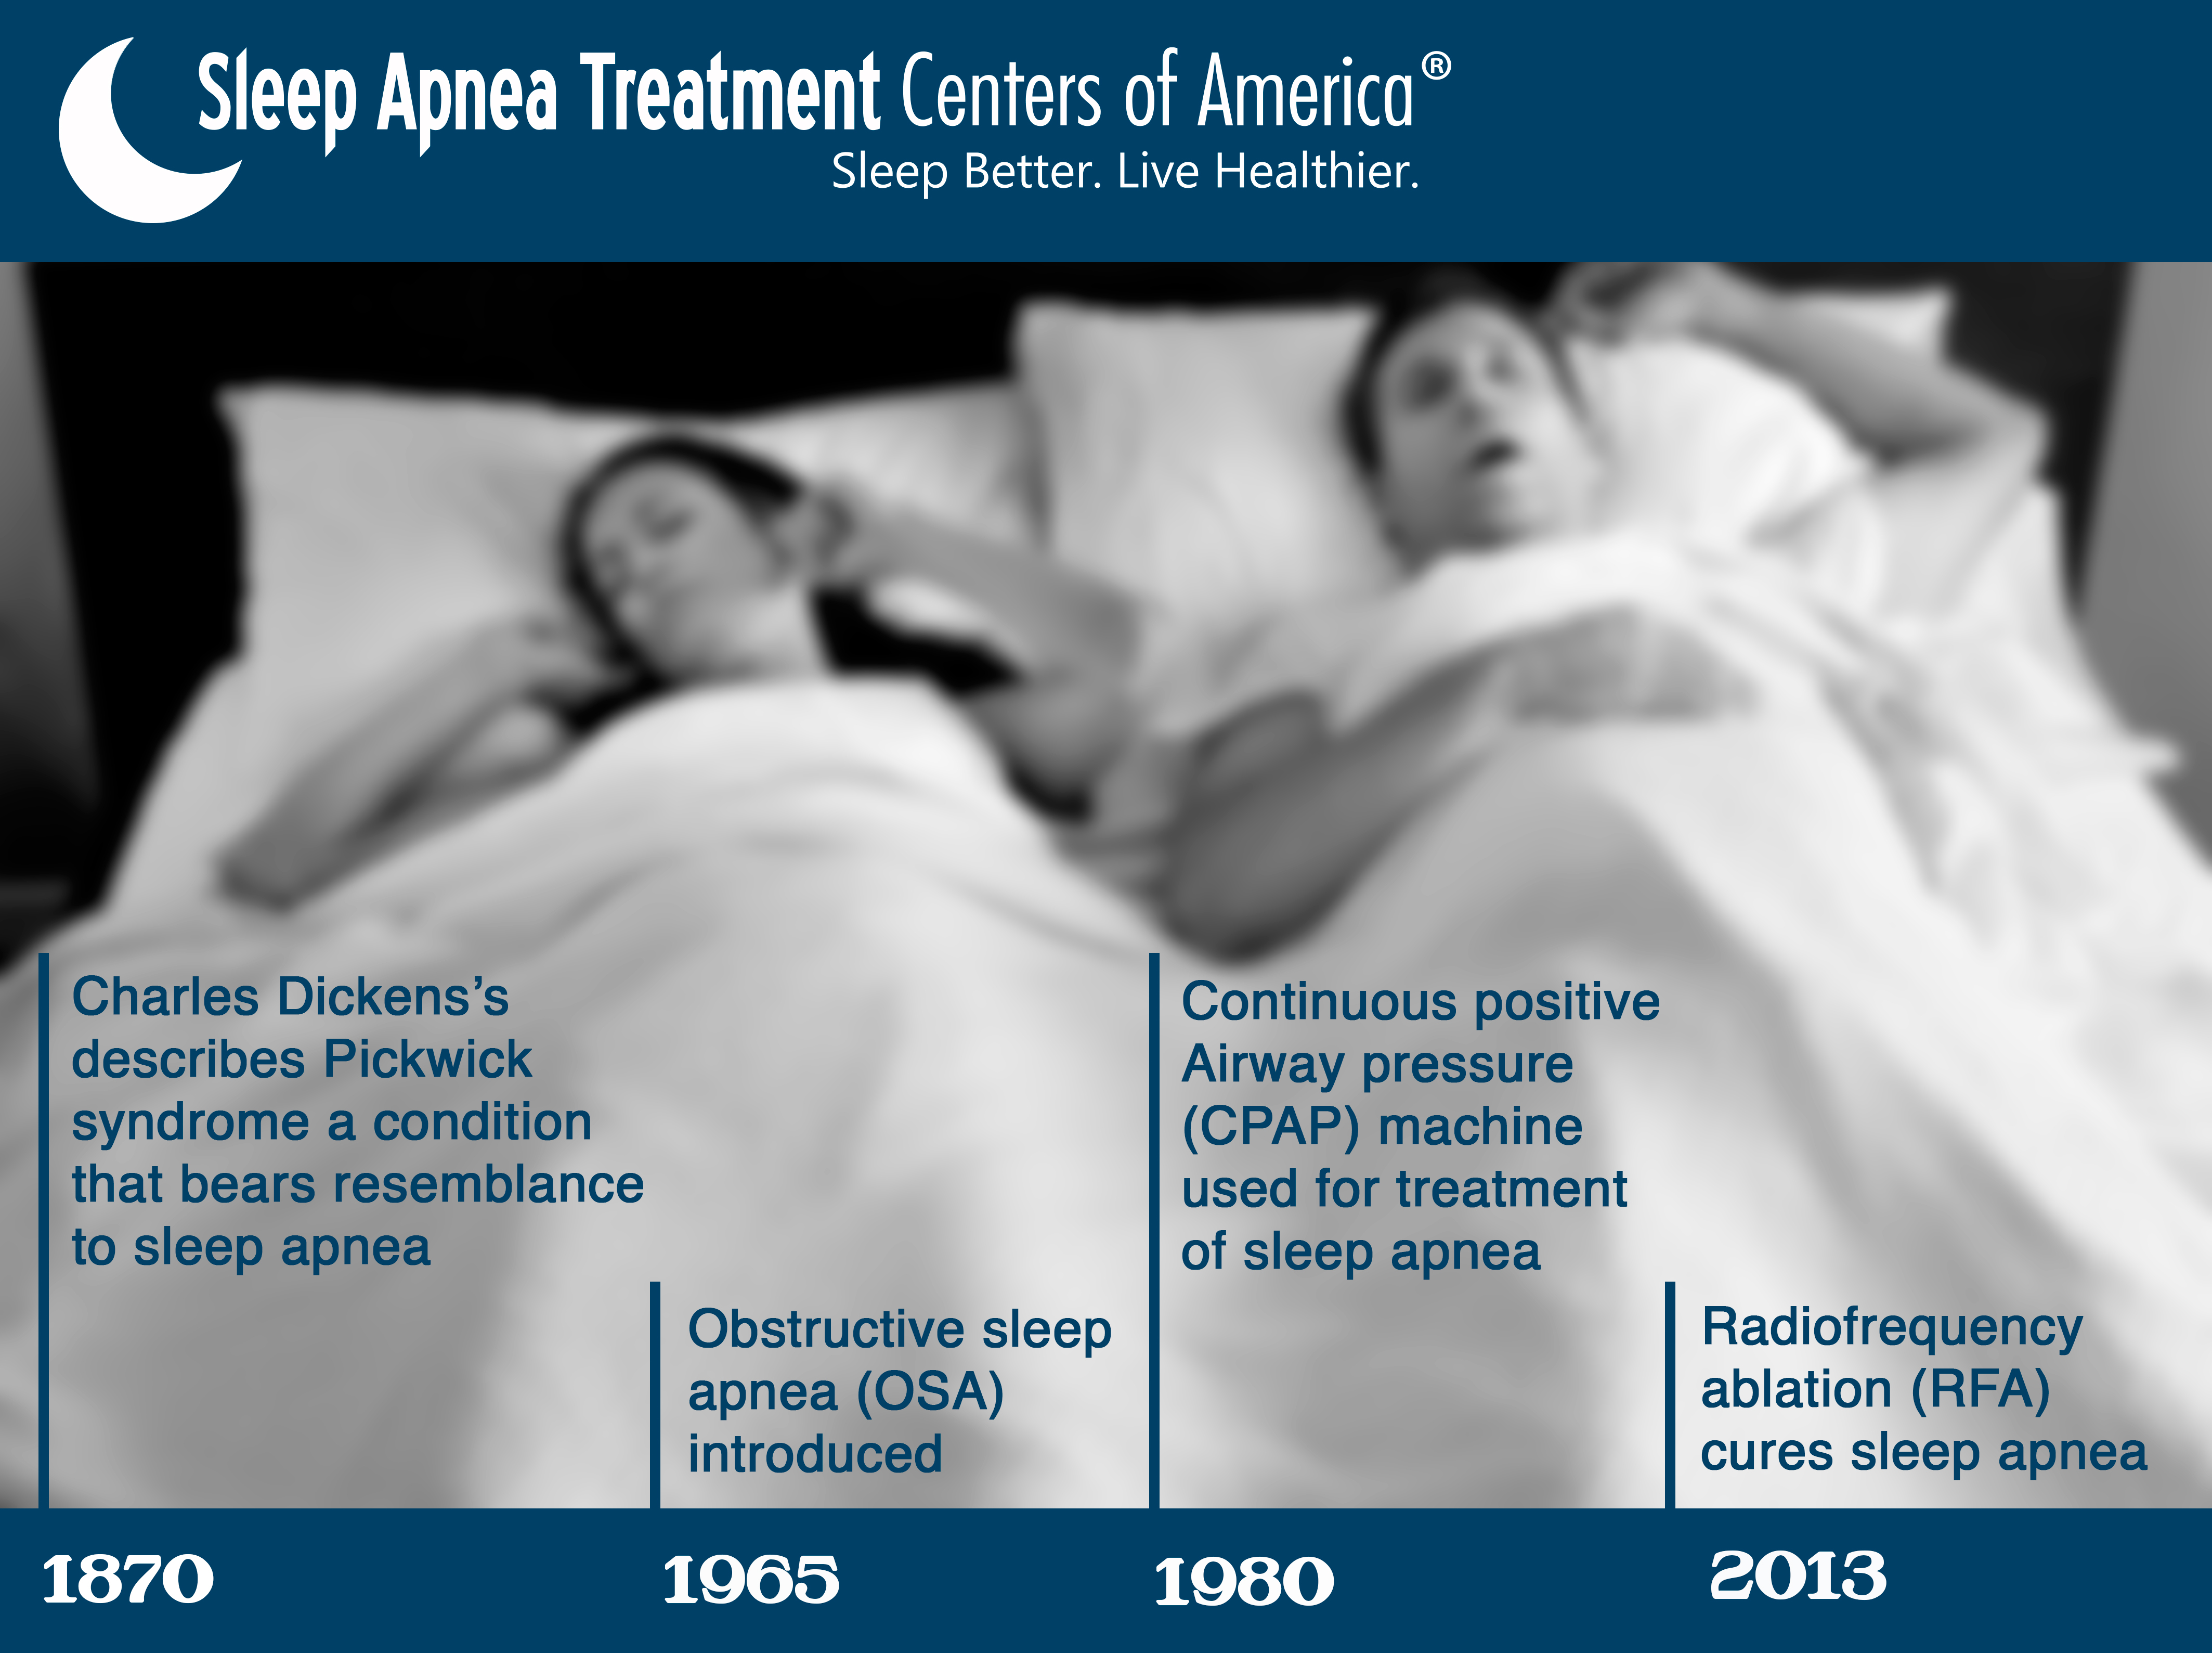 Timeline of Sleep Apnea